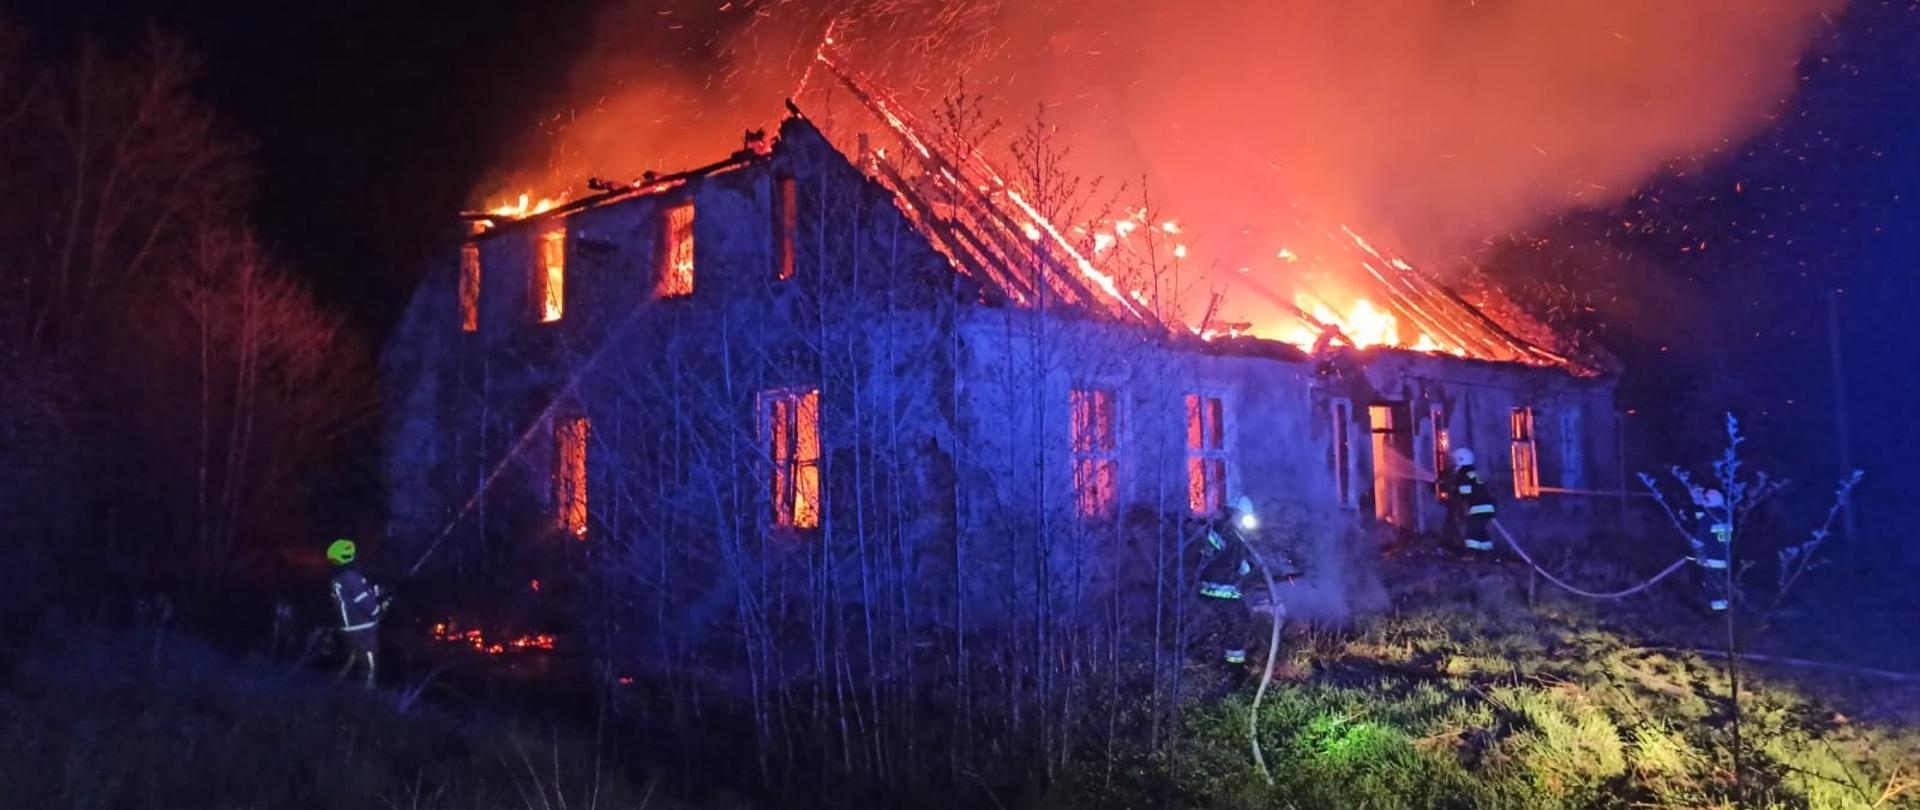 Zdjęcie zrobione nocą. Dach budynku mieszkalnego cały w ogniu. Strażacy gaszą pożar.